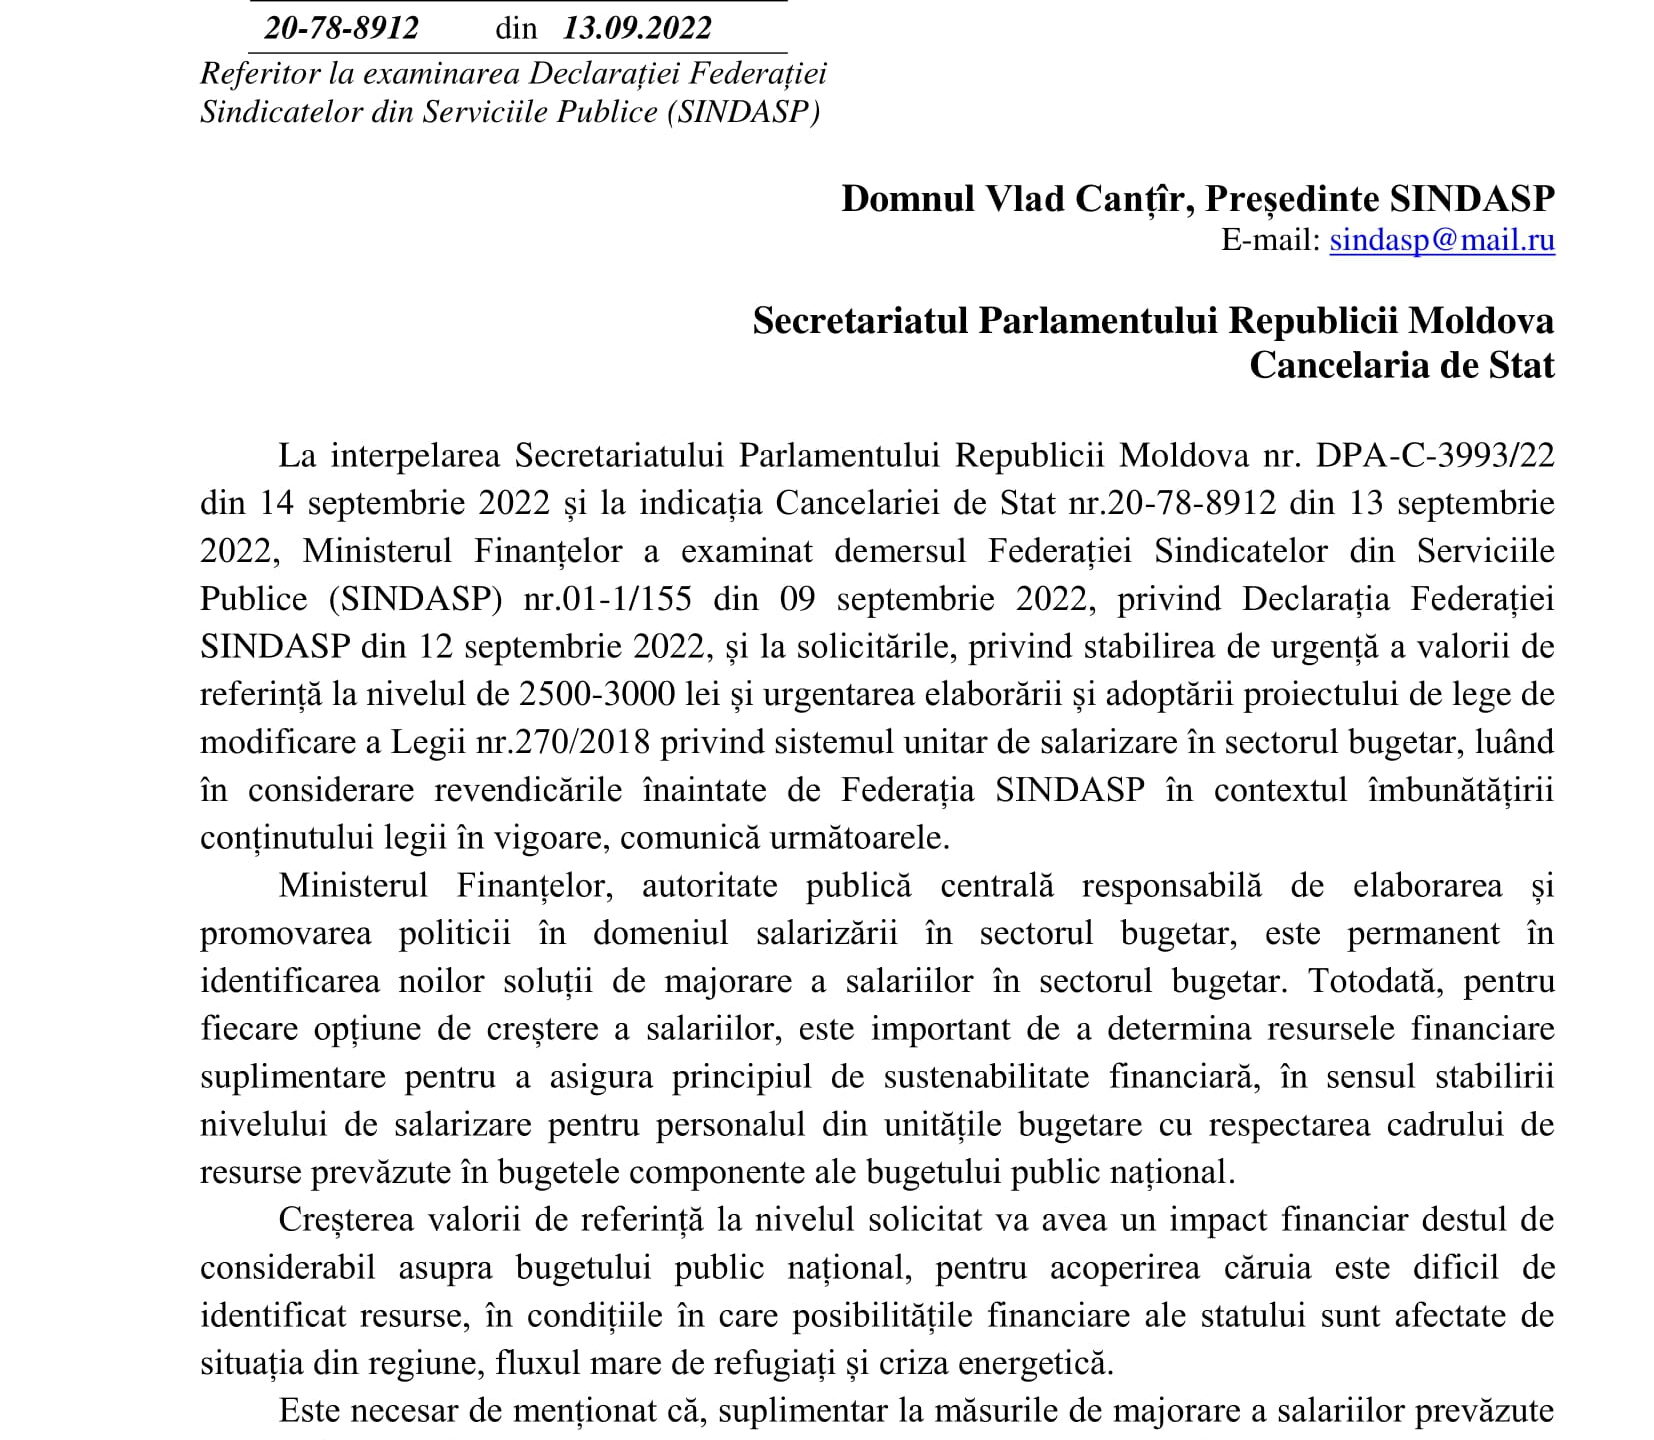 Răspunsul Ministerului Finanțelor la Declarația Federației Sindasp (la indicațiile Guvernului și Parlamentului Republicii Moldova)